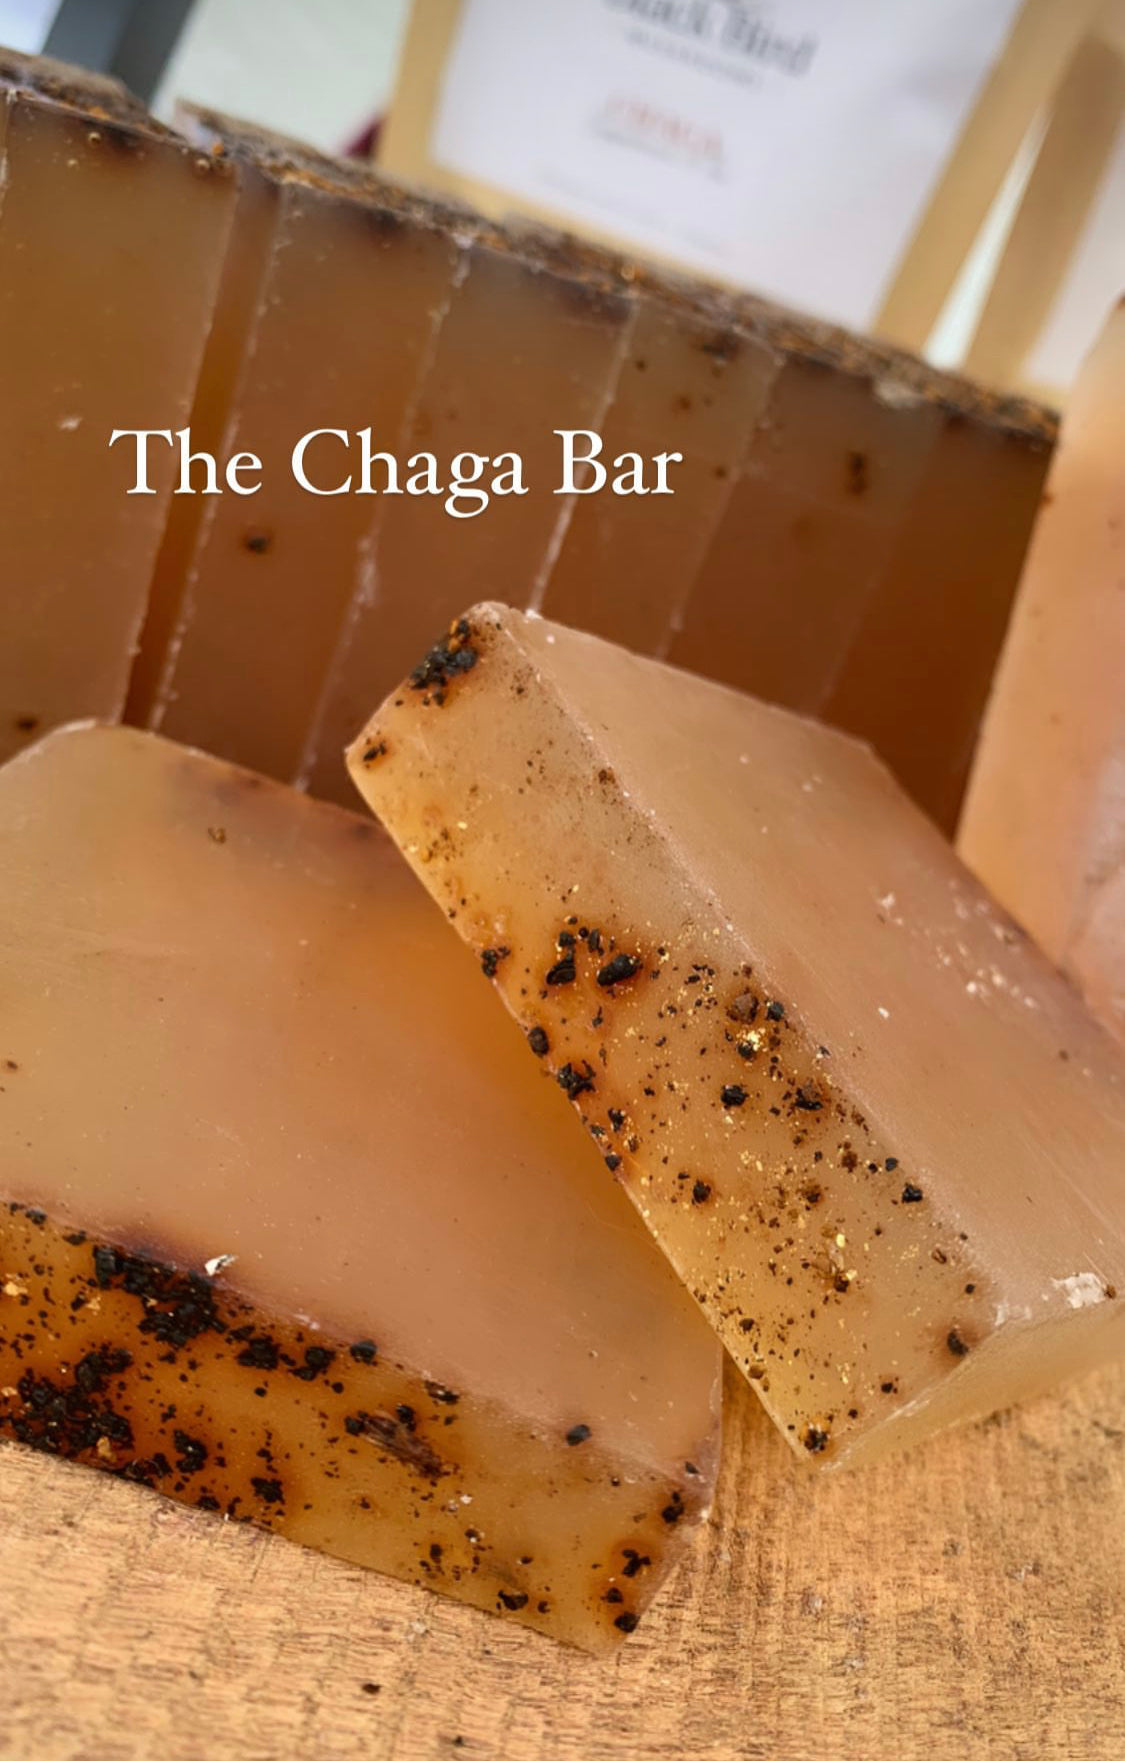 The Chaga Bar